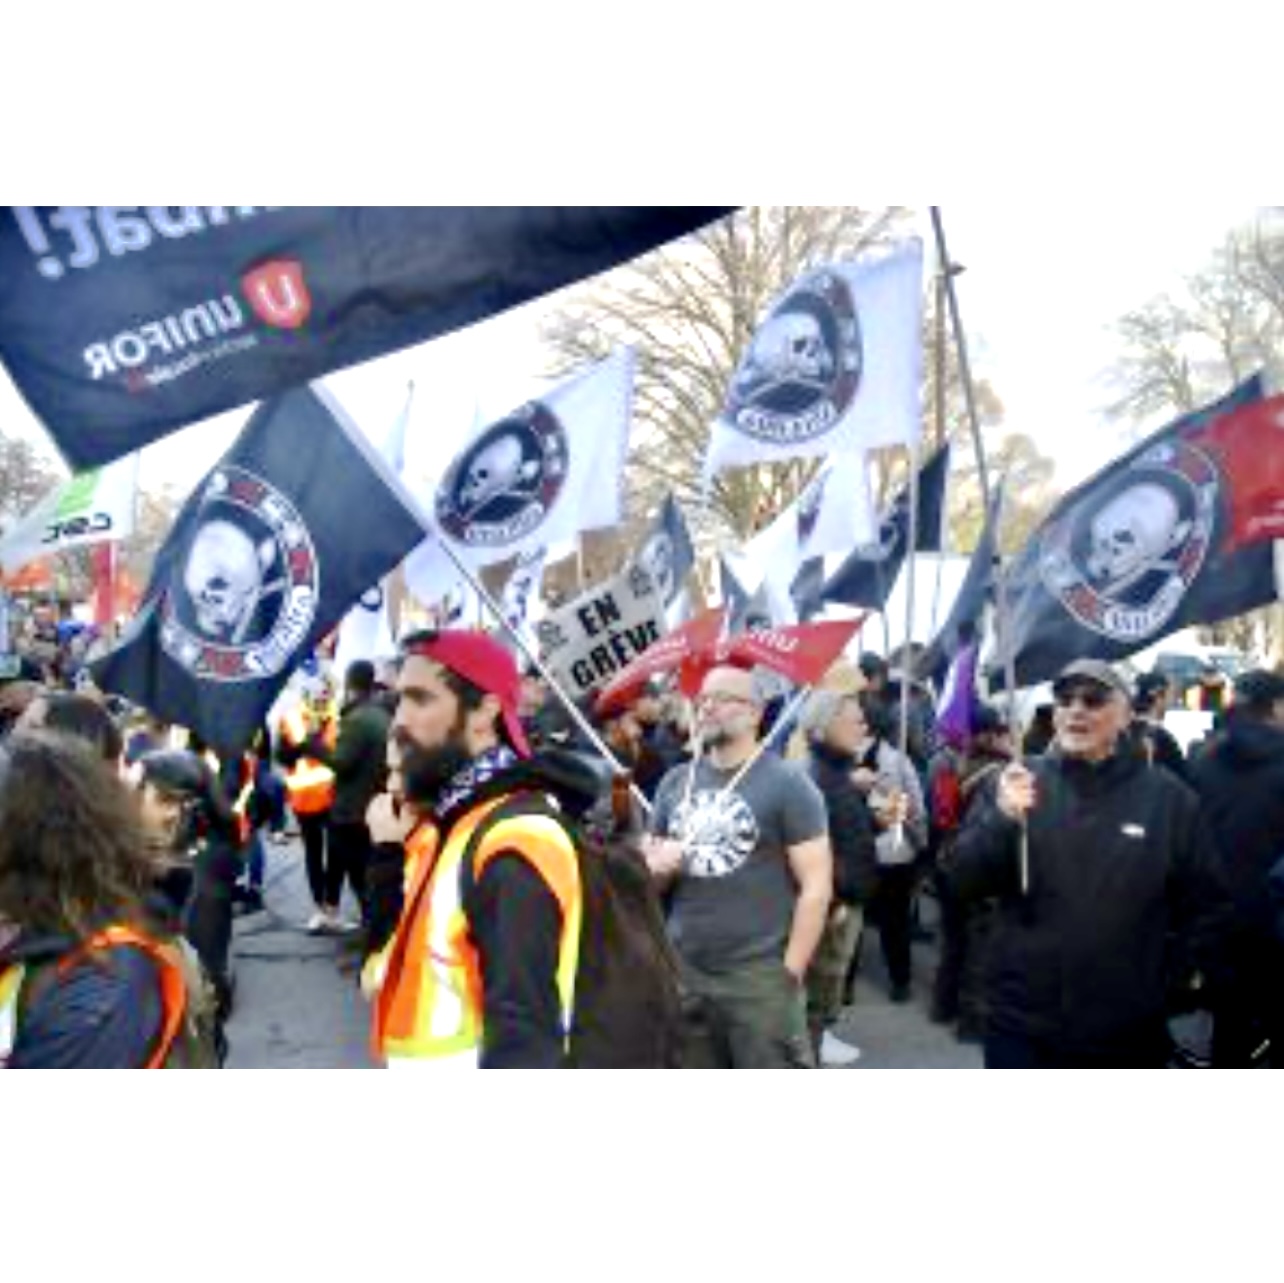 Une procession des Marches avec des participants tenant des drapeaux et des banderoles.